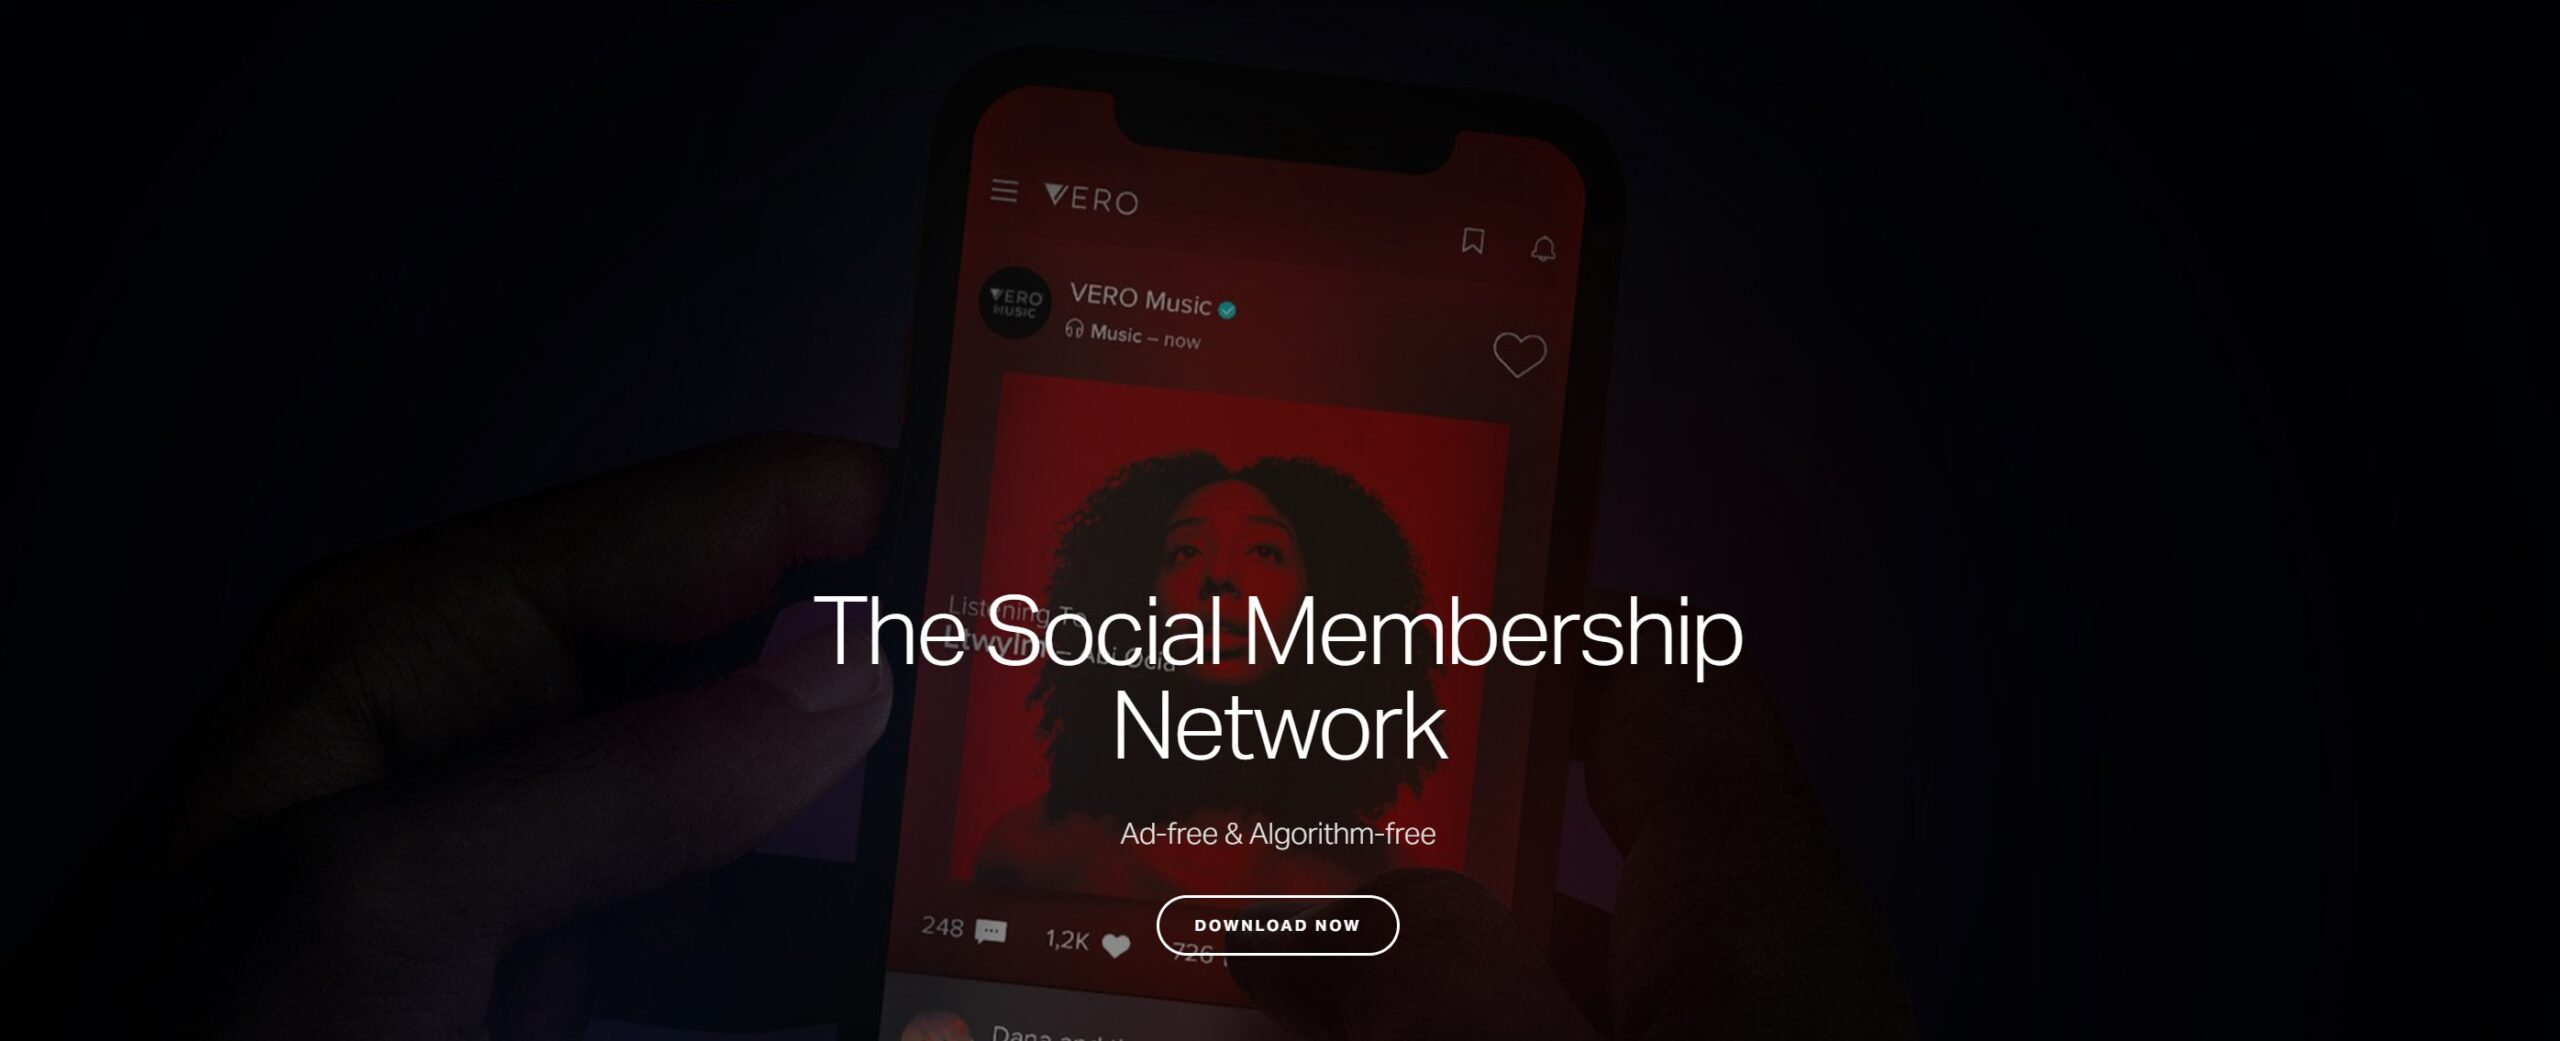 Vero Social Media Platform - Social Membership Network